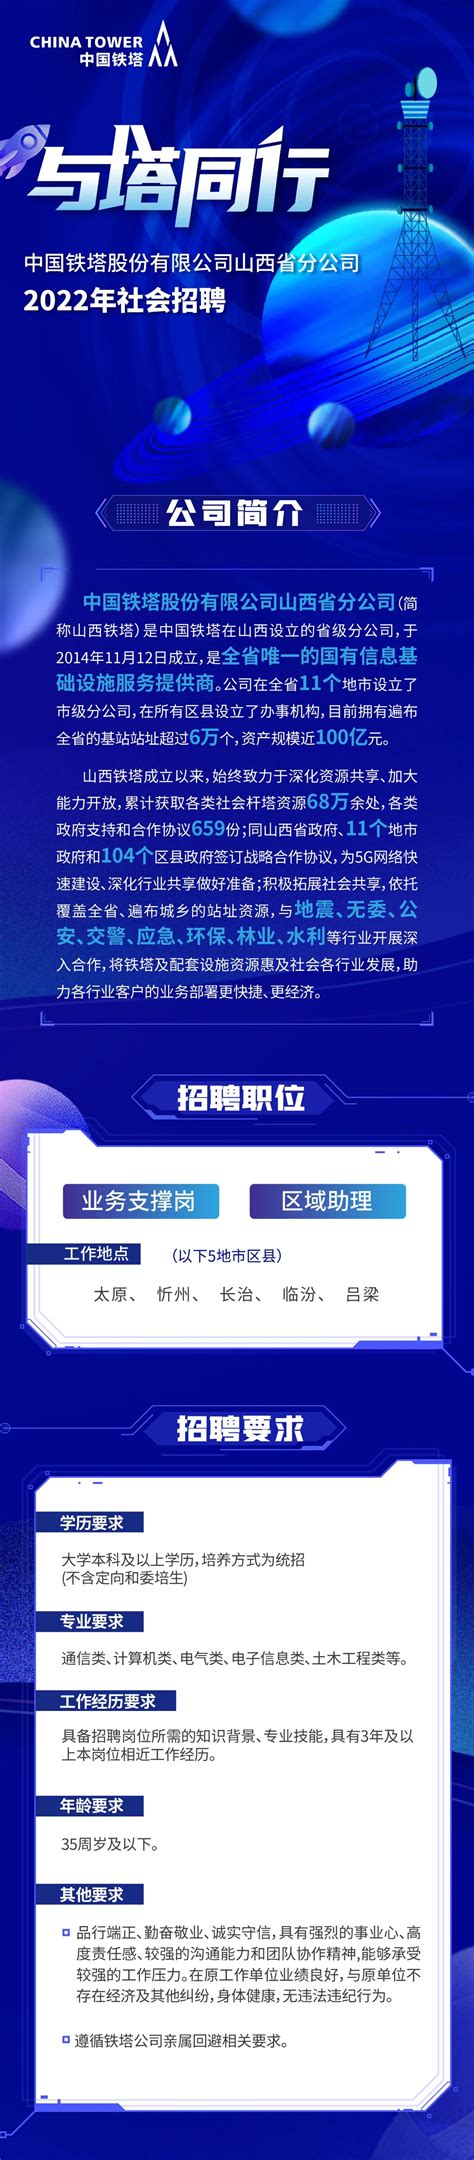 【名企】中国铁塔股份有限公司山西省分公司2022年社会招聘